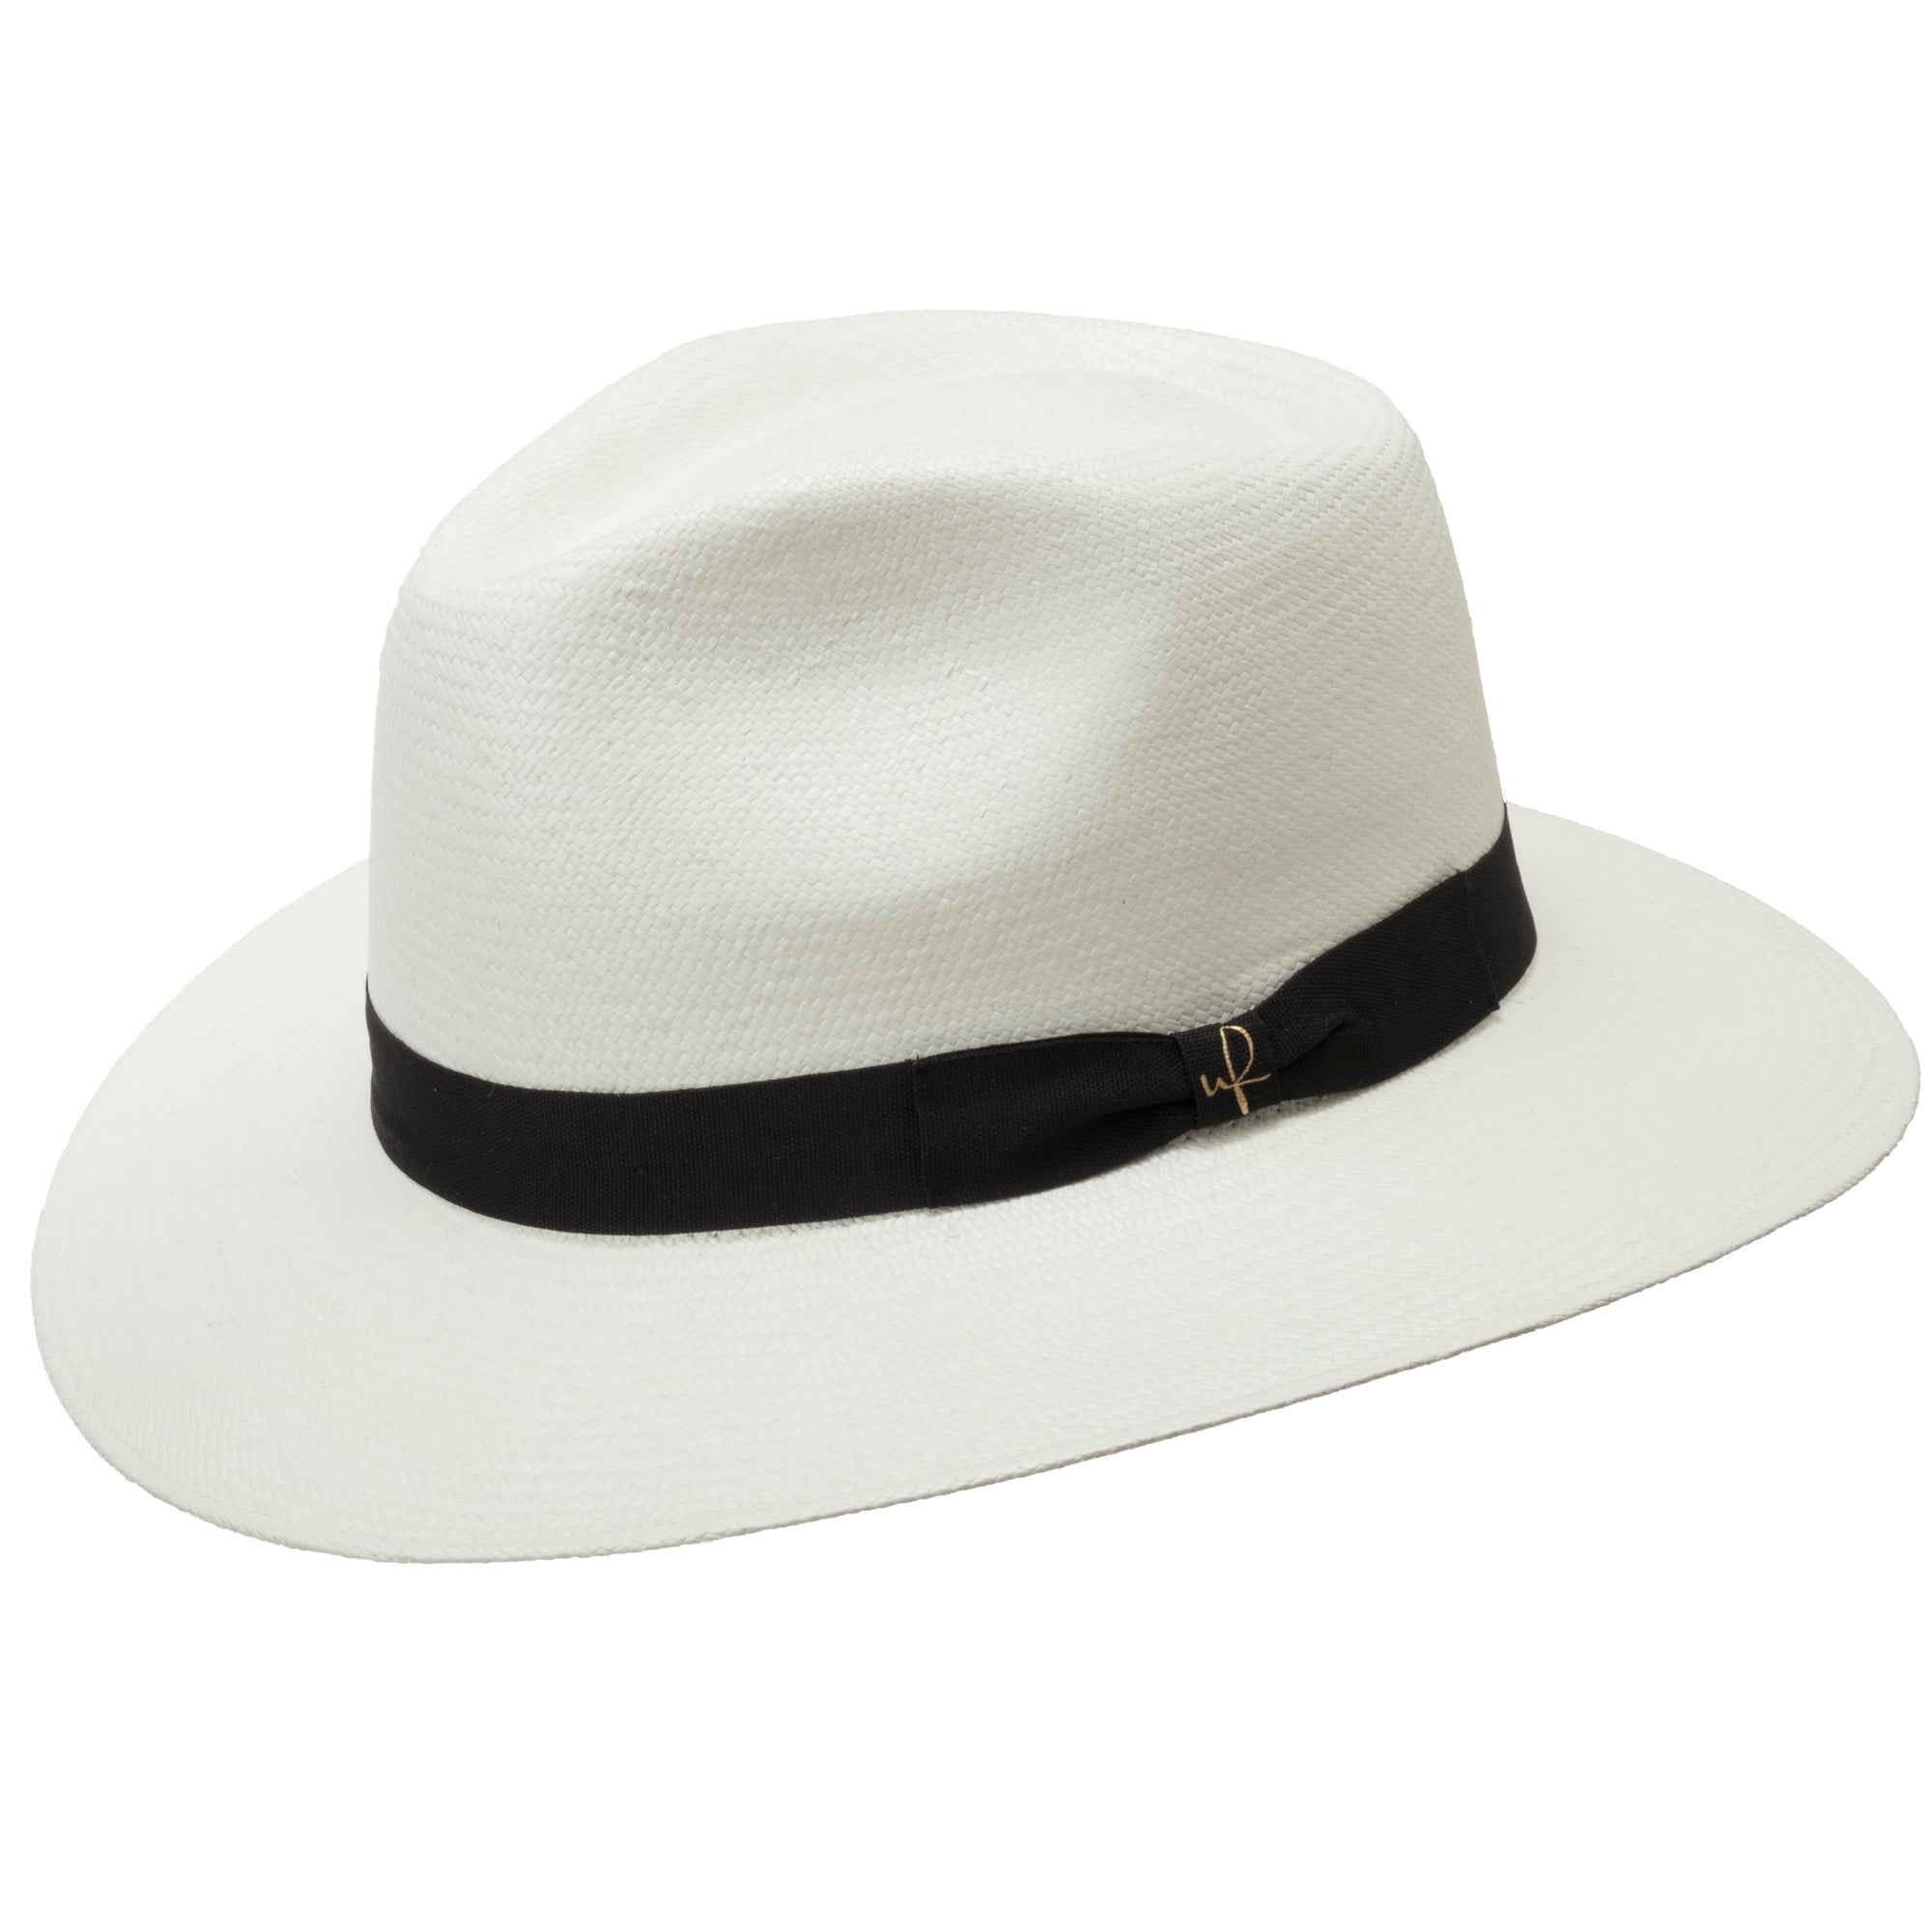 Panama Hats Page 3 - Ultrafino